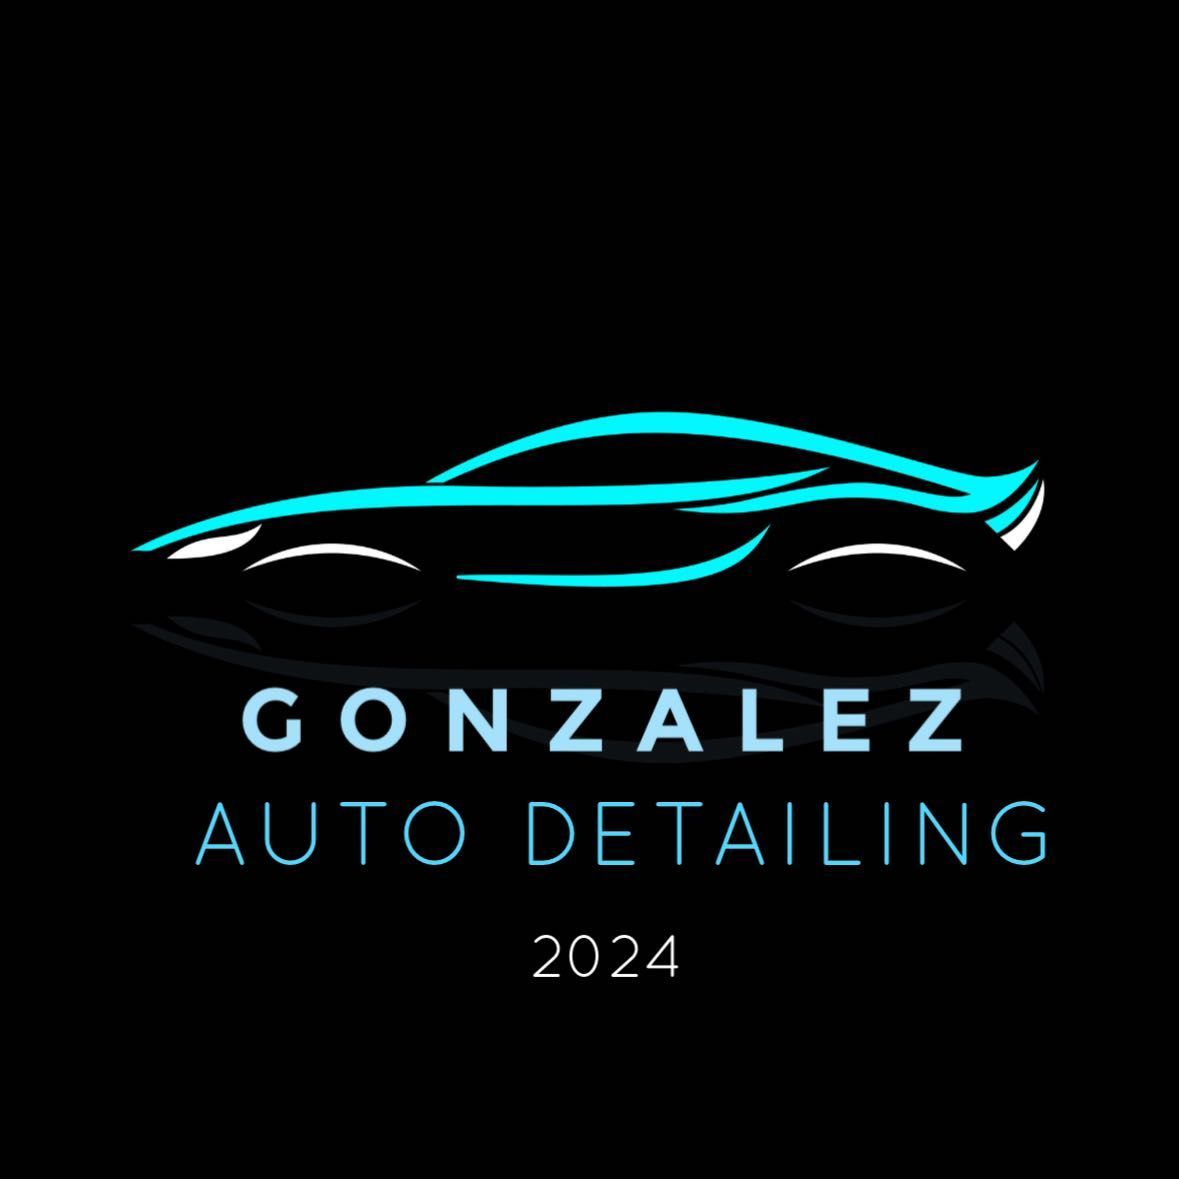 Gonzalez AUTO DETAILING, 160 Monarch Ave, West Babylon, 11704